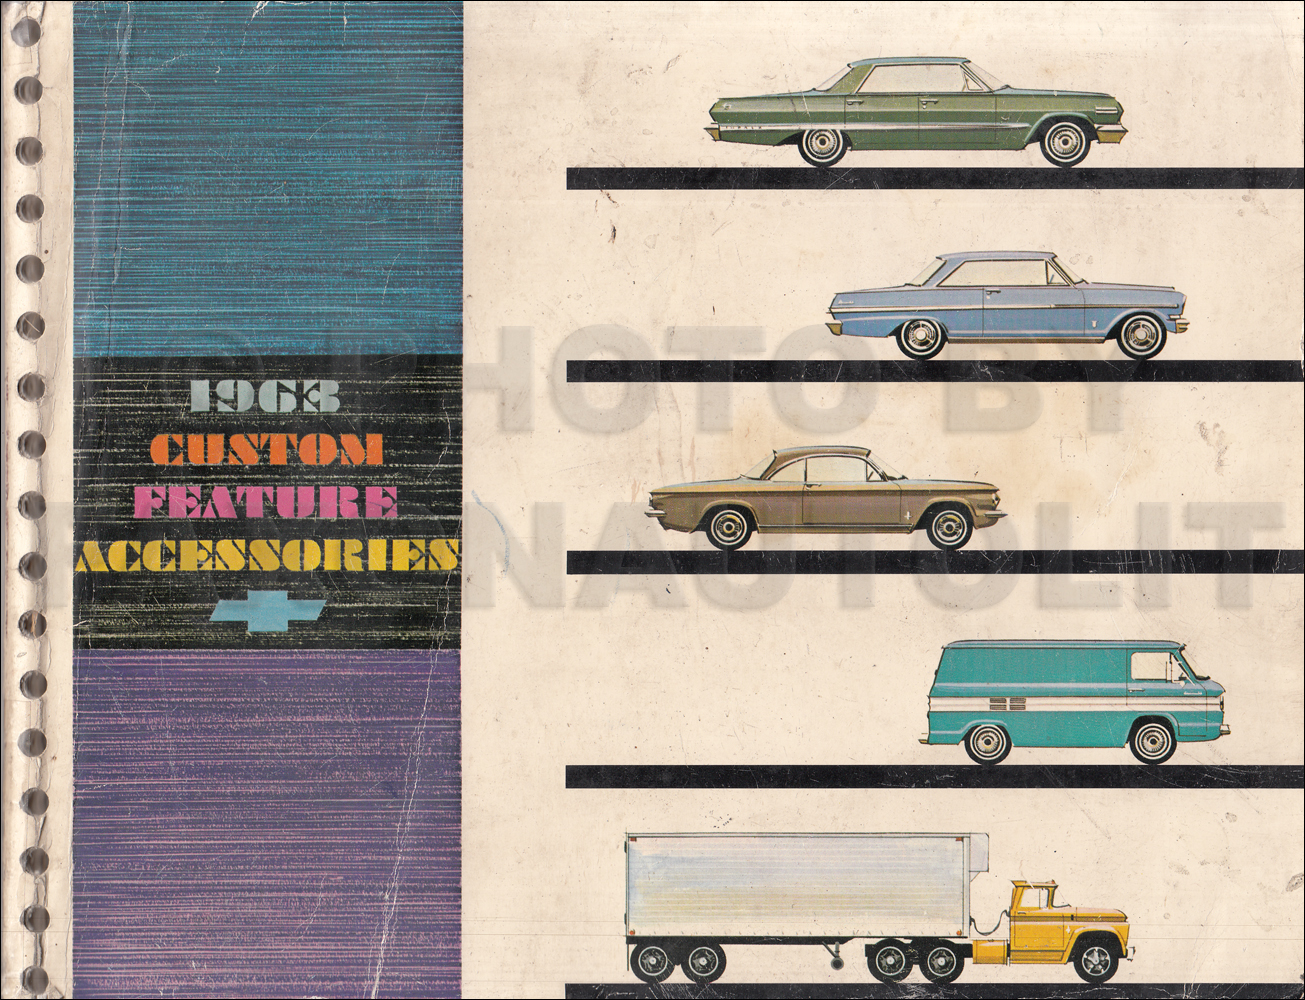 1963 Chevrolet Custom Feature Accessories Dealer Album Original